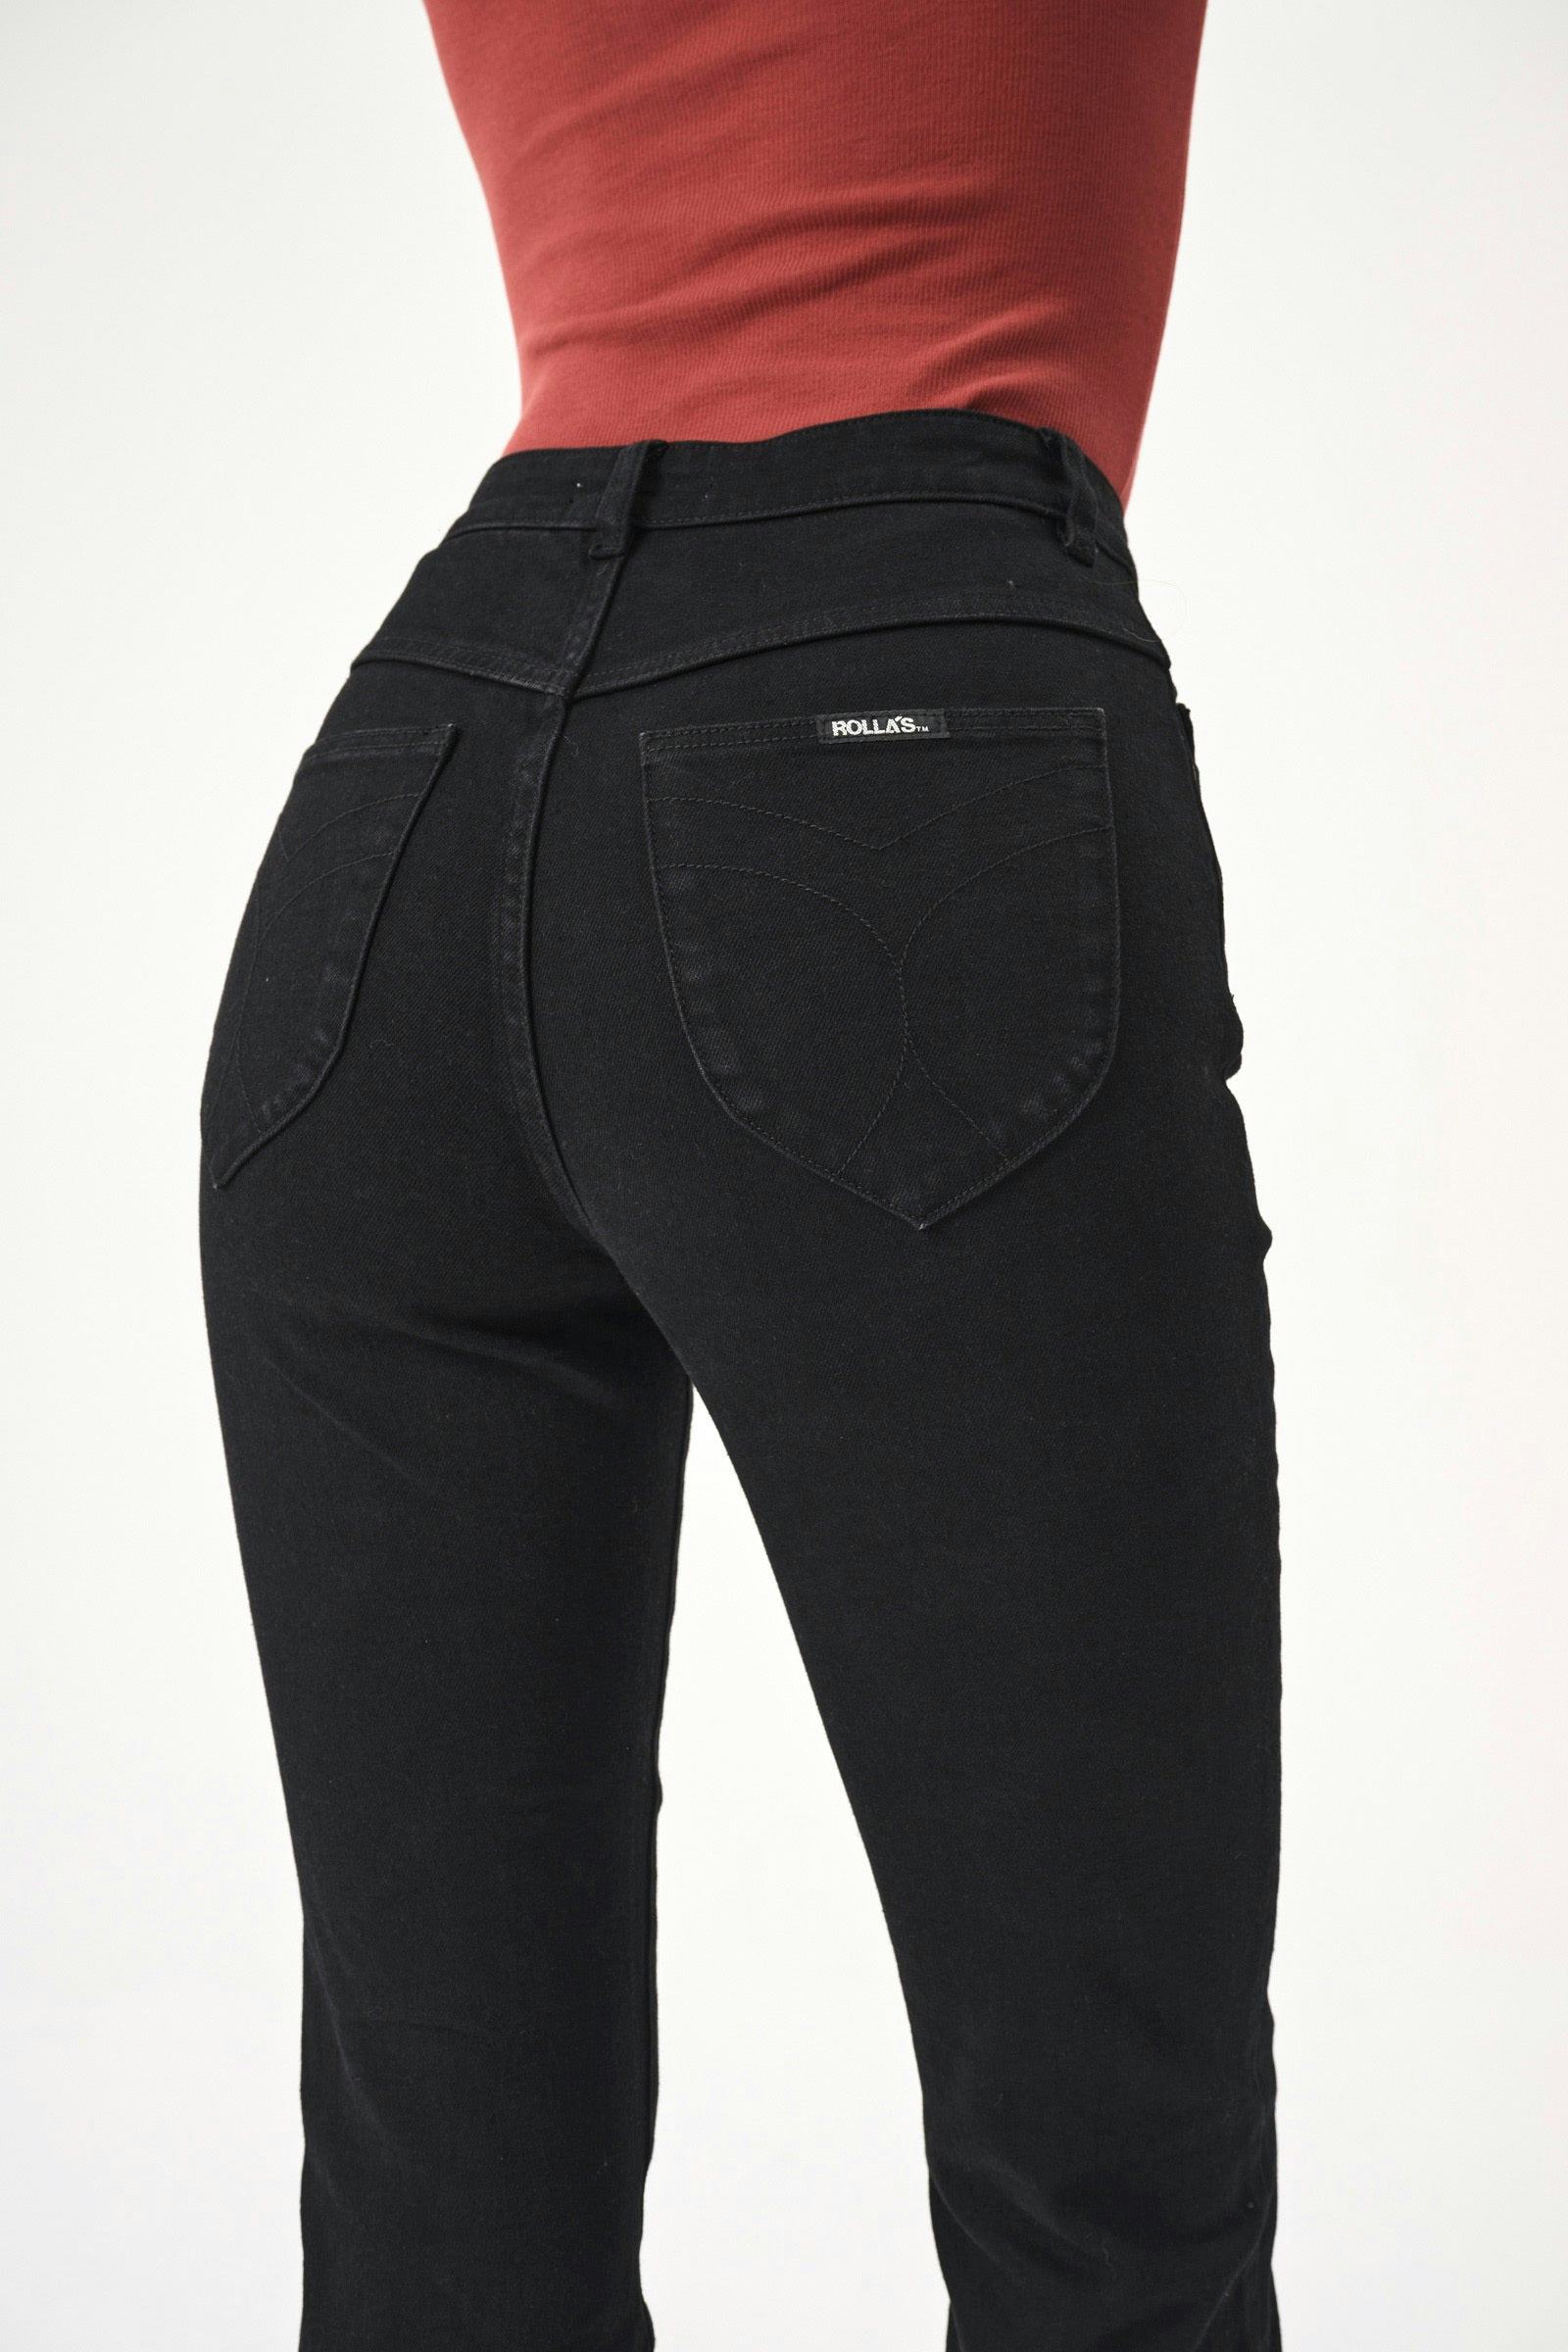 Buy Dusters - Comfort Rinse Black Online | Rollas Jeans